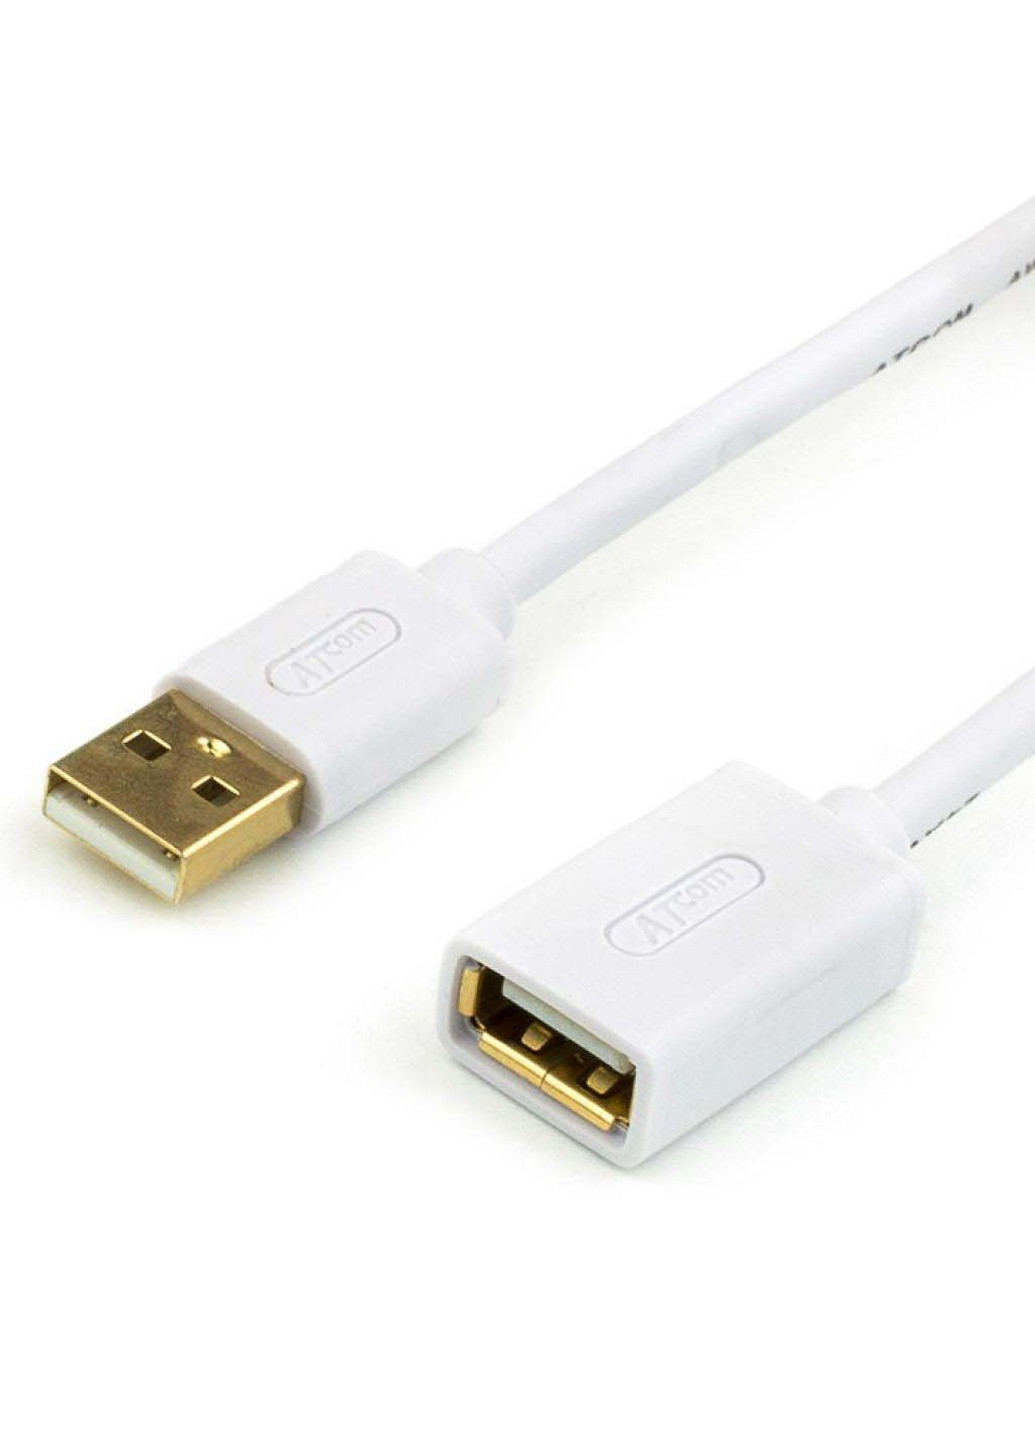 Дата кабель USB 2.0 AM / AF 1.8m (13425) Atcom usb 2.0 am/af 1.8m (239381357)